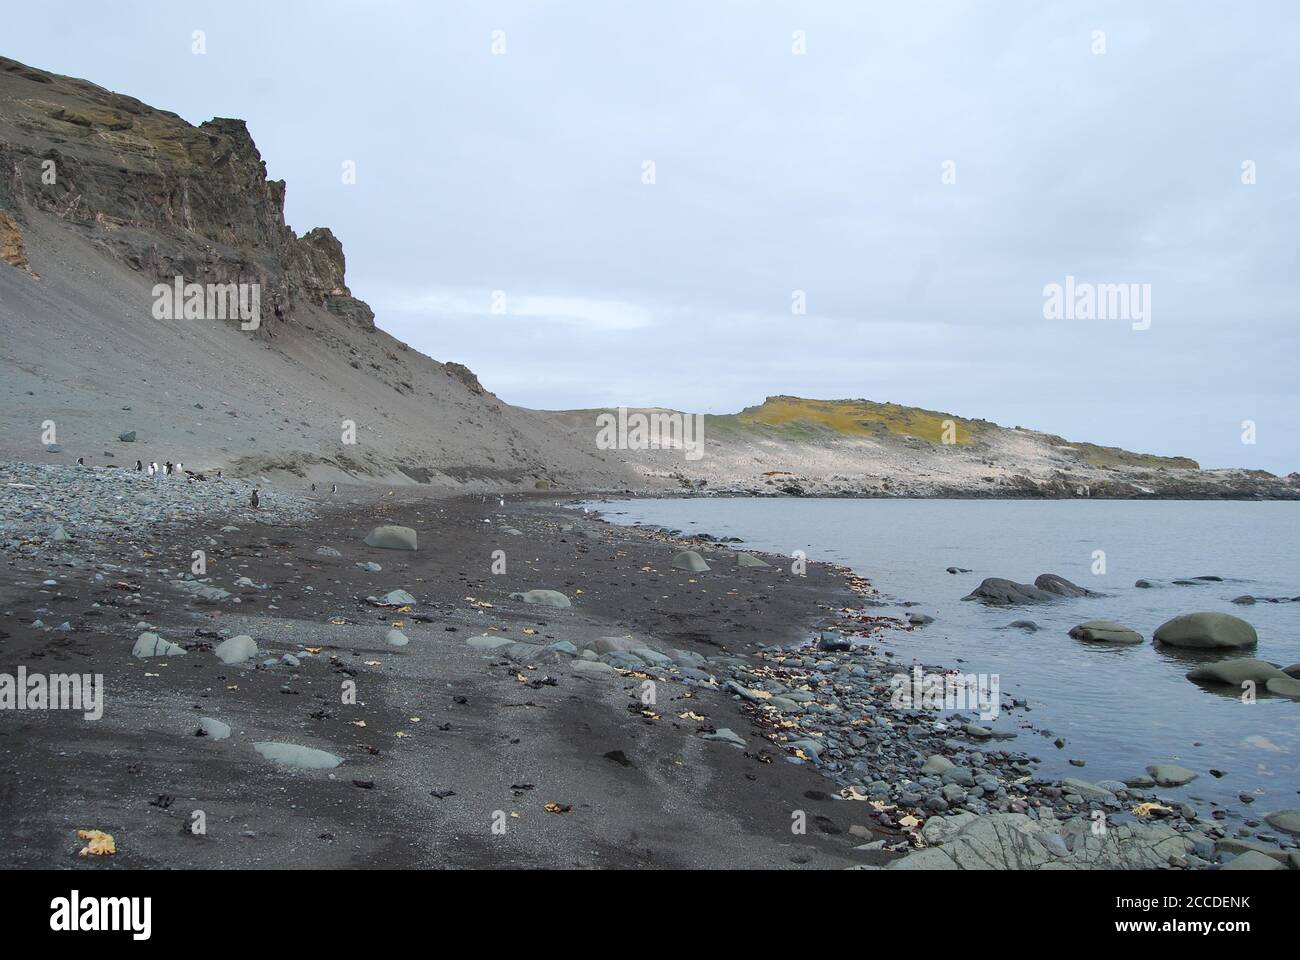 Hannah Point ist ein Punkt an der Südküste von Livingston Island in den südlichen Shetland Inseln, Antarktis. Hier sind die Pinguine Gentoo und Macaroni. Stockfoto